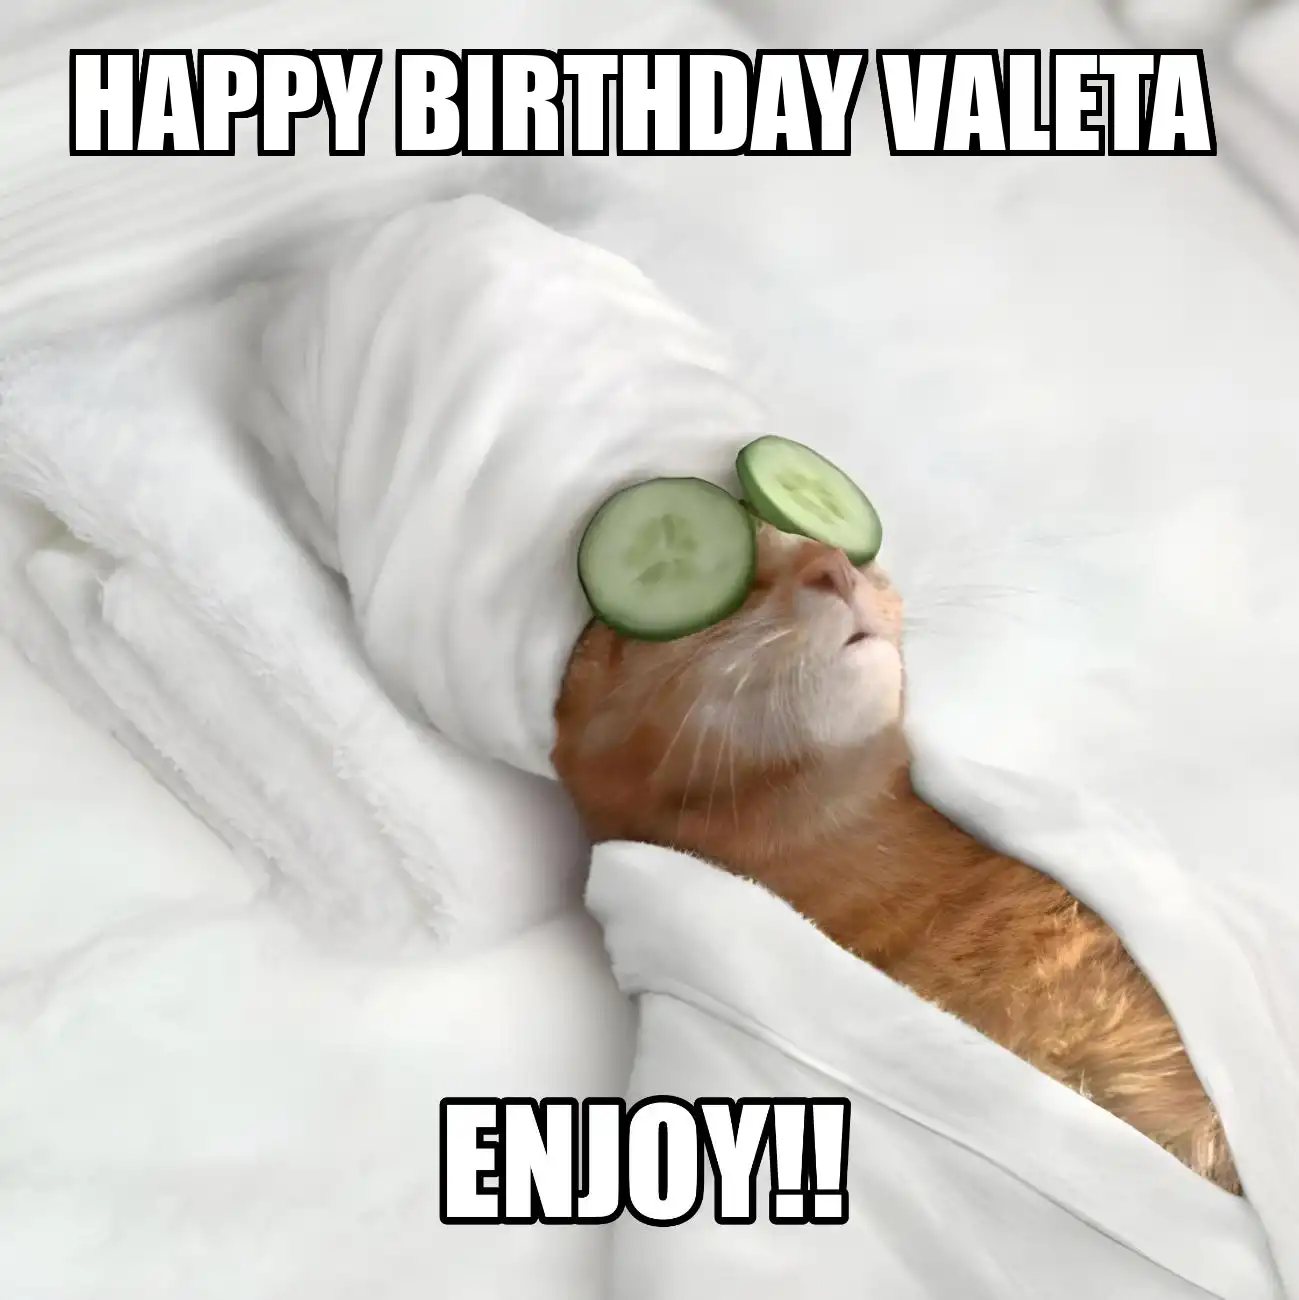 Happy Birthday Valeta Enjoy Cat Meme